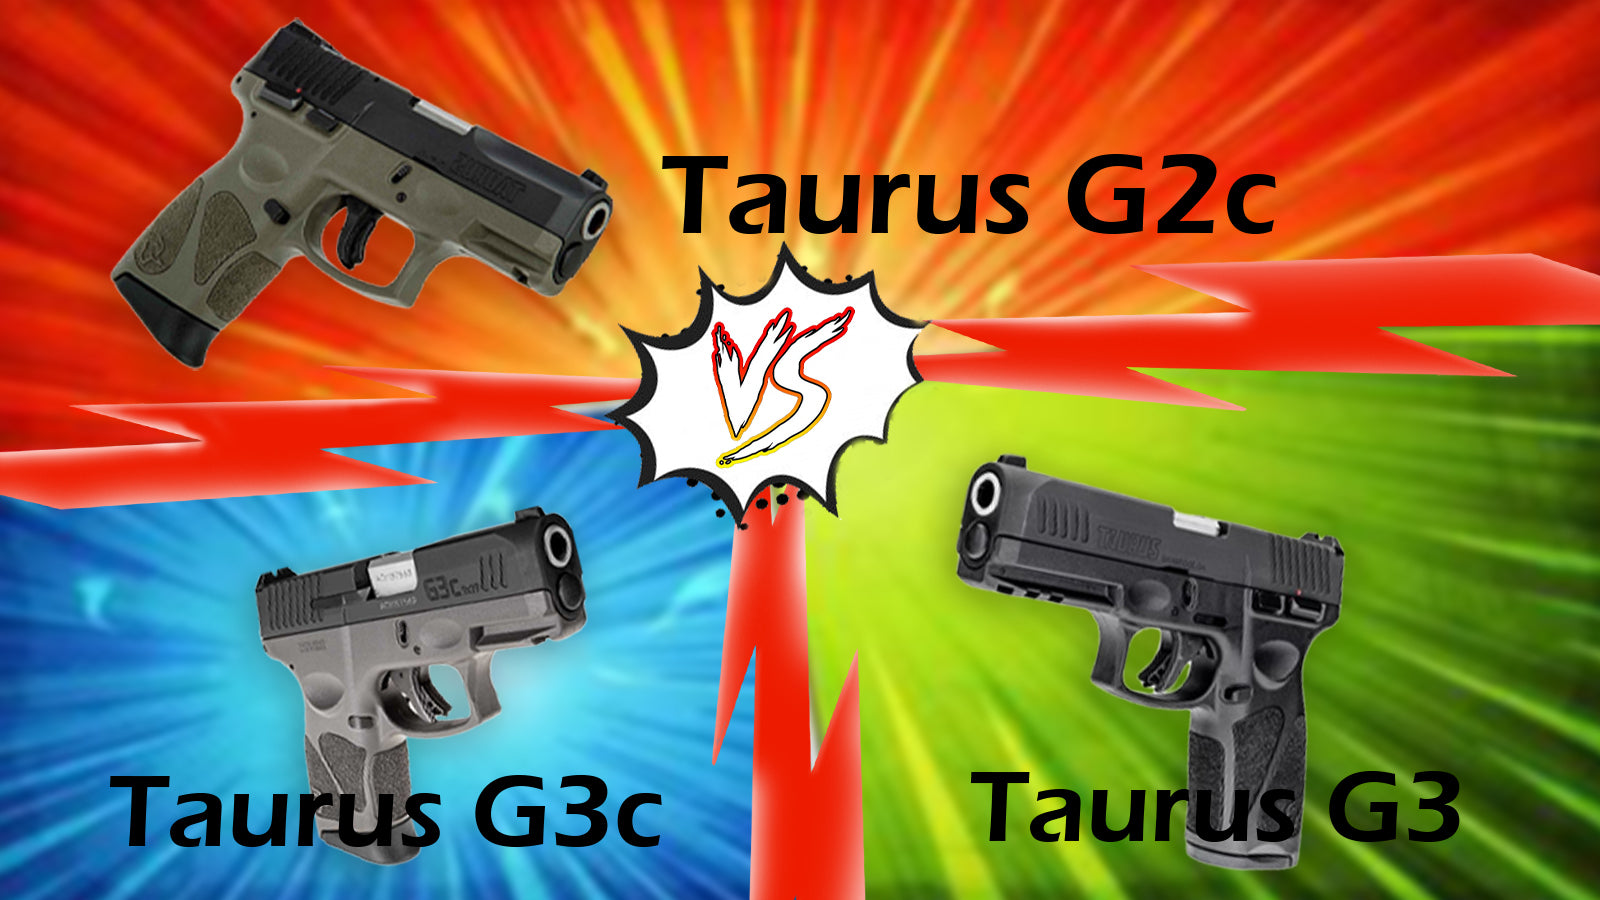 Taurus G2c vs. Taurus G3c vs. Taurus G3